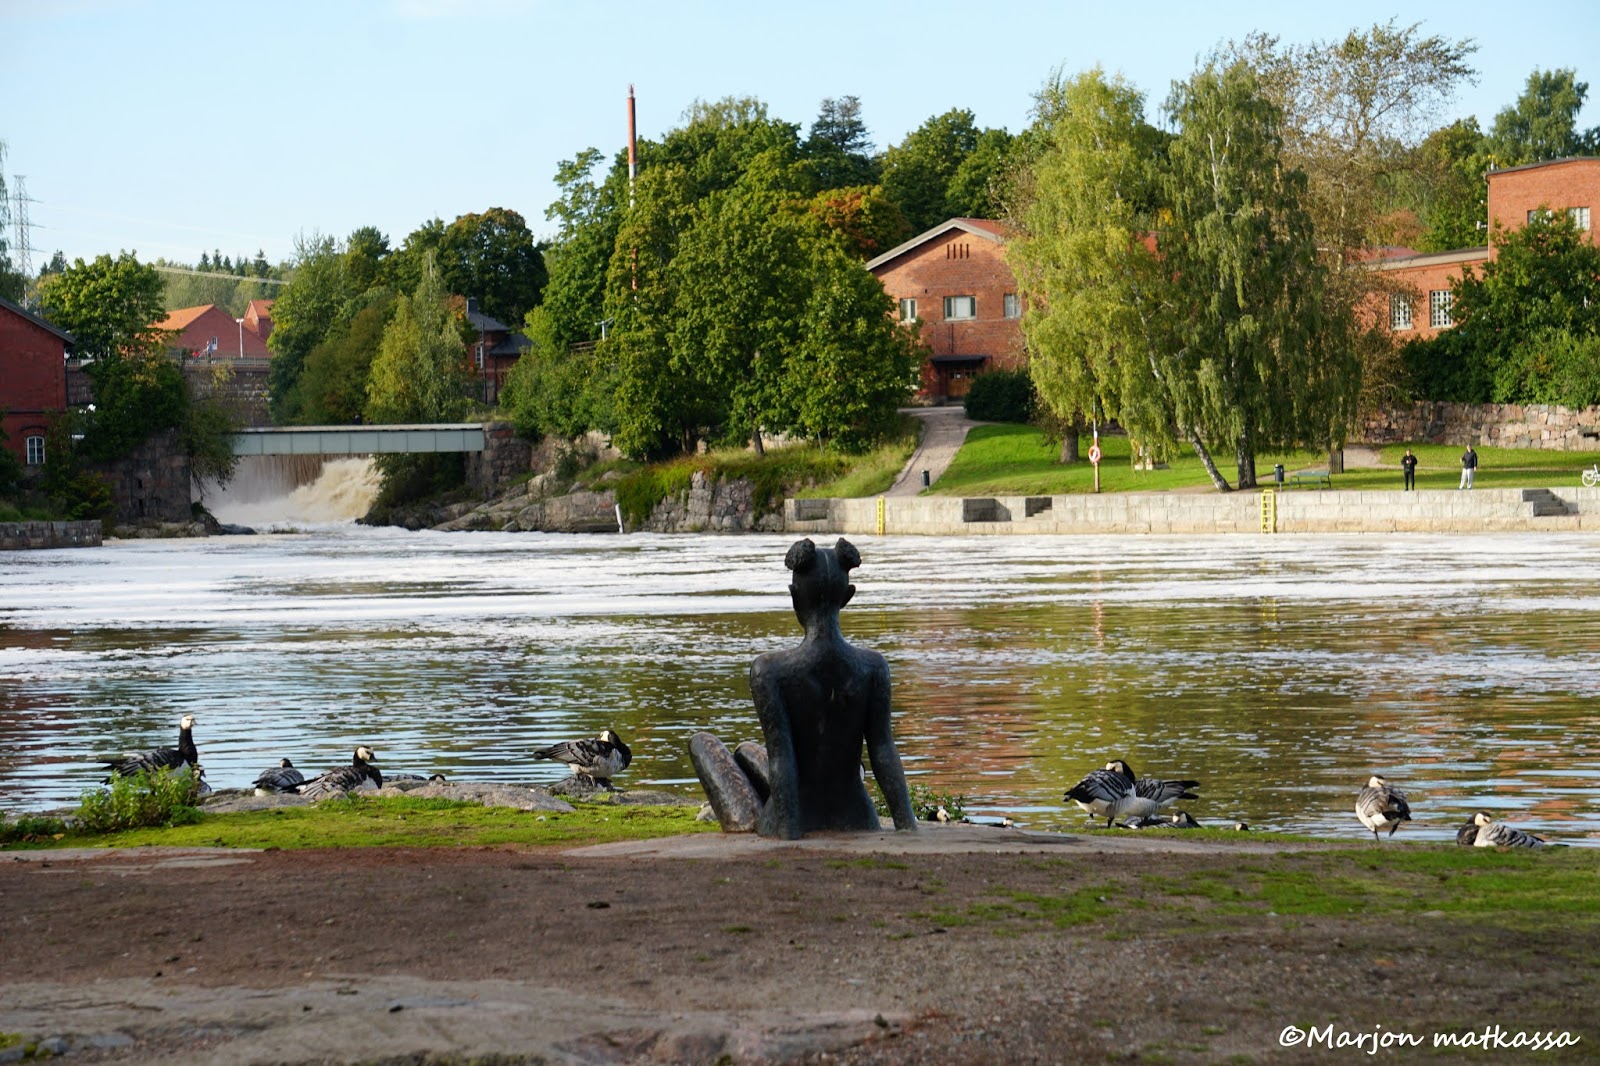 Marjon matkassa : Helsingin Vanhankaupungin historiallinen kävelykierros